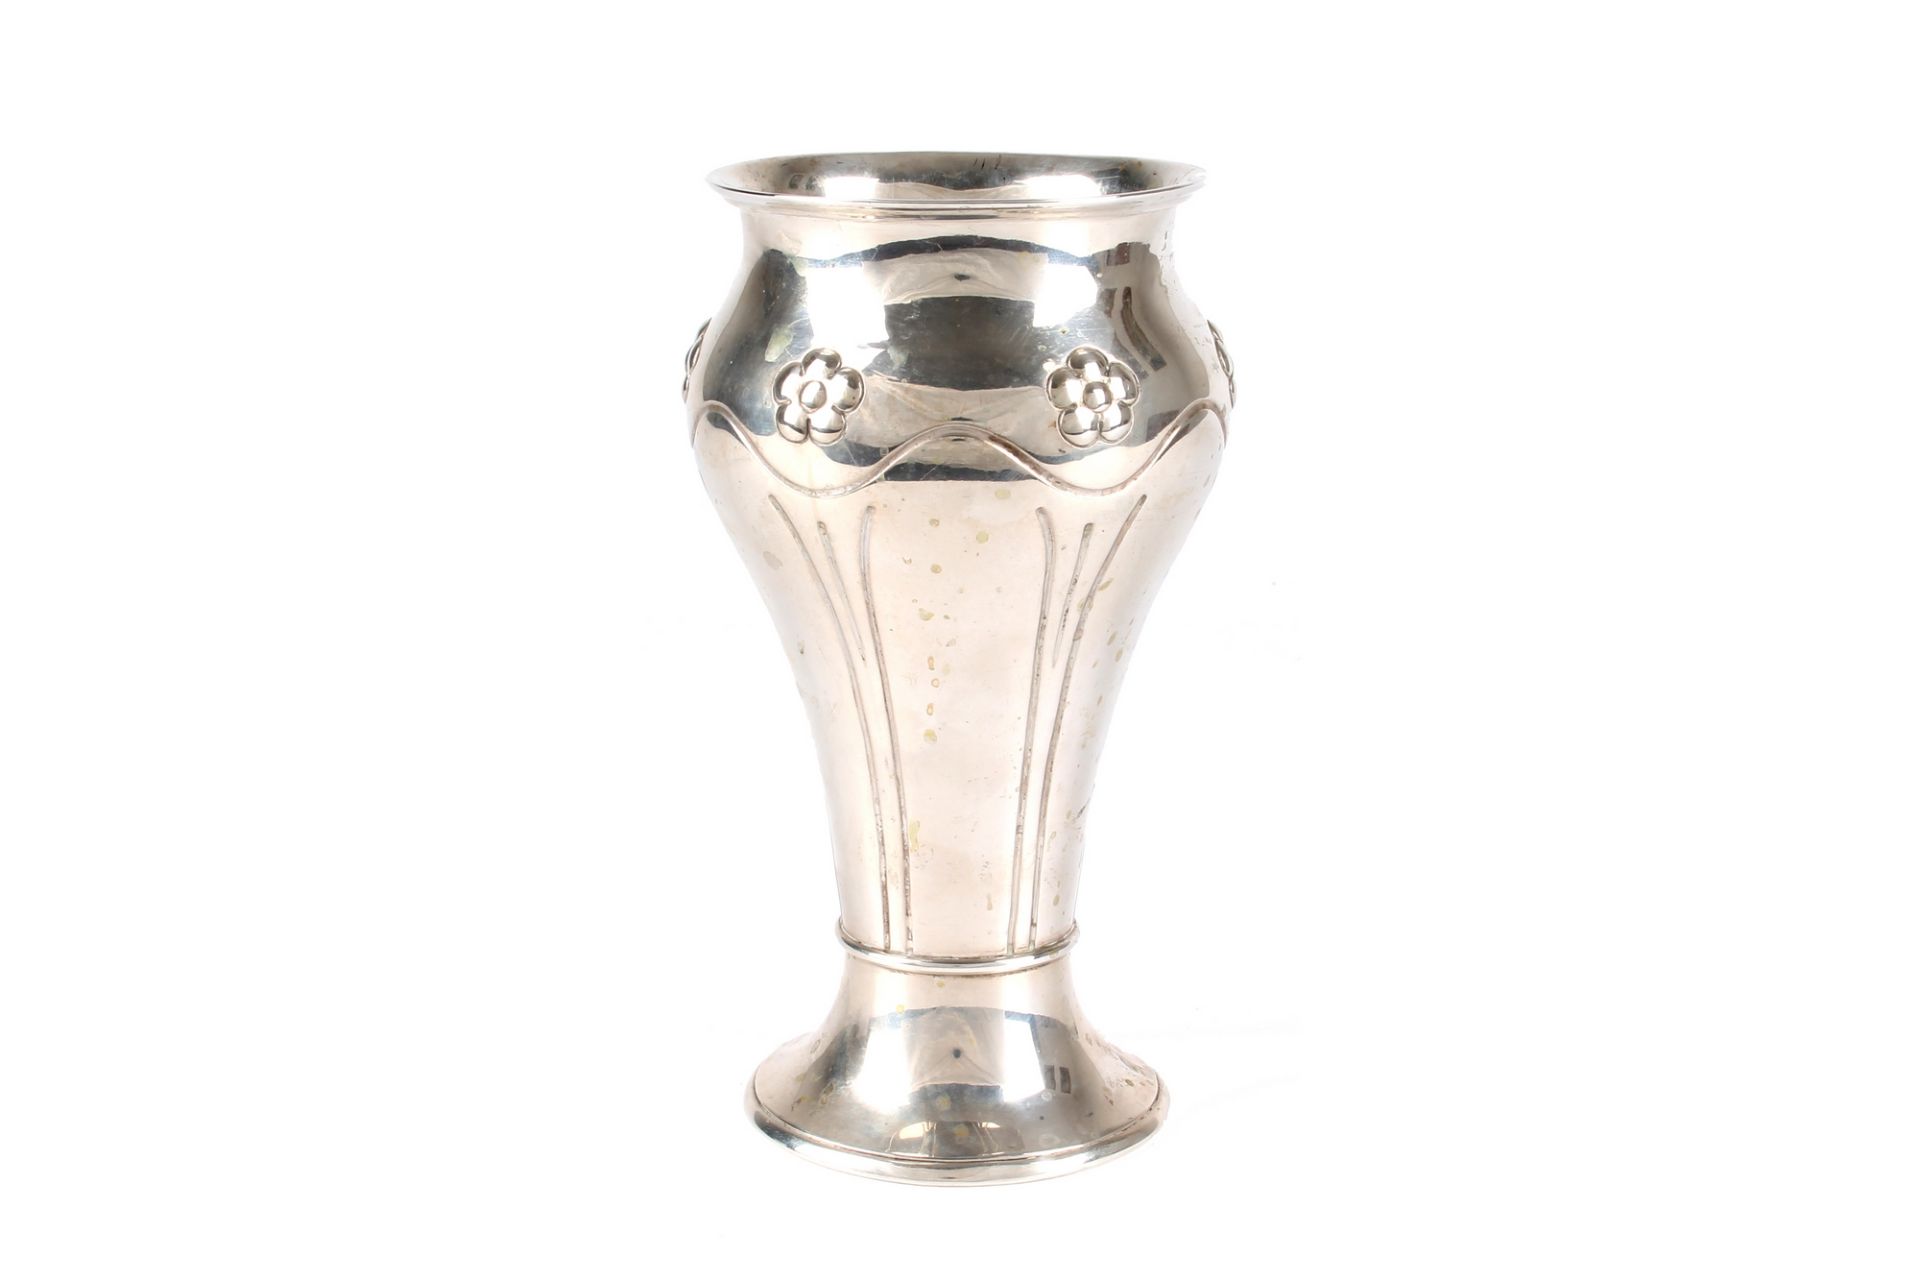 Jugendstil Silber Vase, denmark silver vase art nouveau, - Image 2 of 6